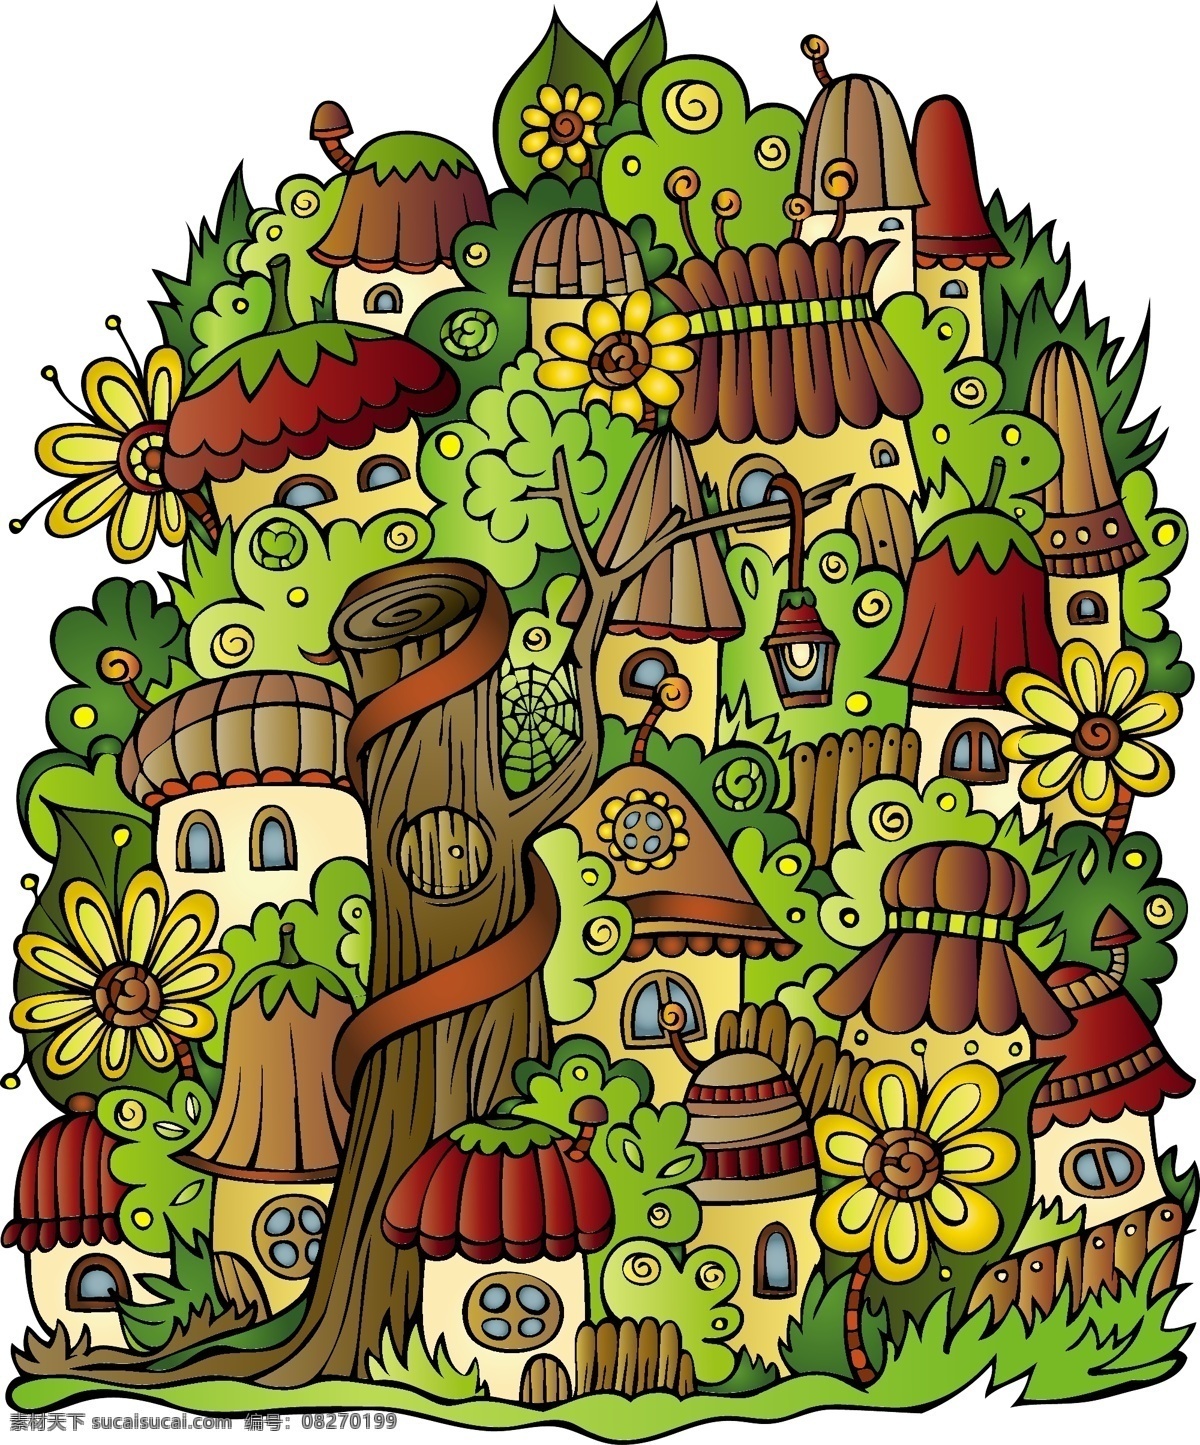 卡通 蘑菇 房子 矢量 插画 格式 花草 可爱 矢量素材 树木 植物 自然 关键字 魔符 矢量图 其他矢量图